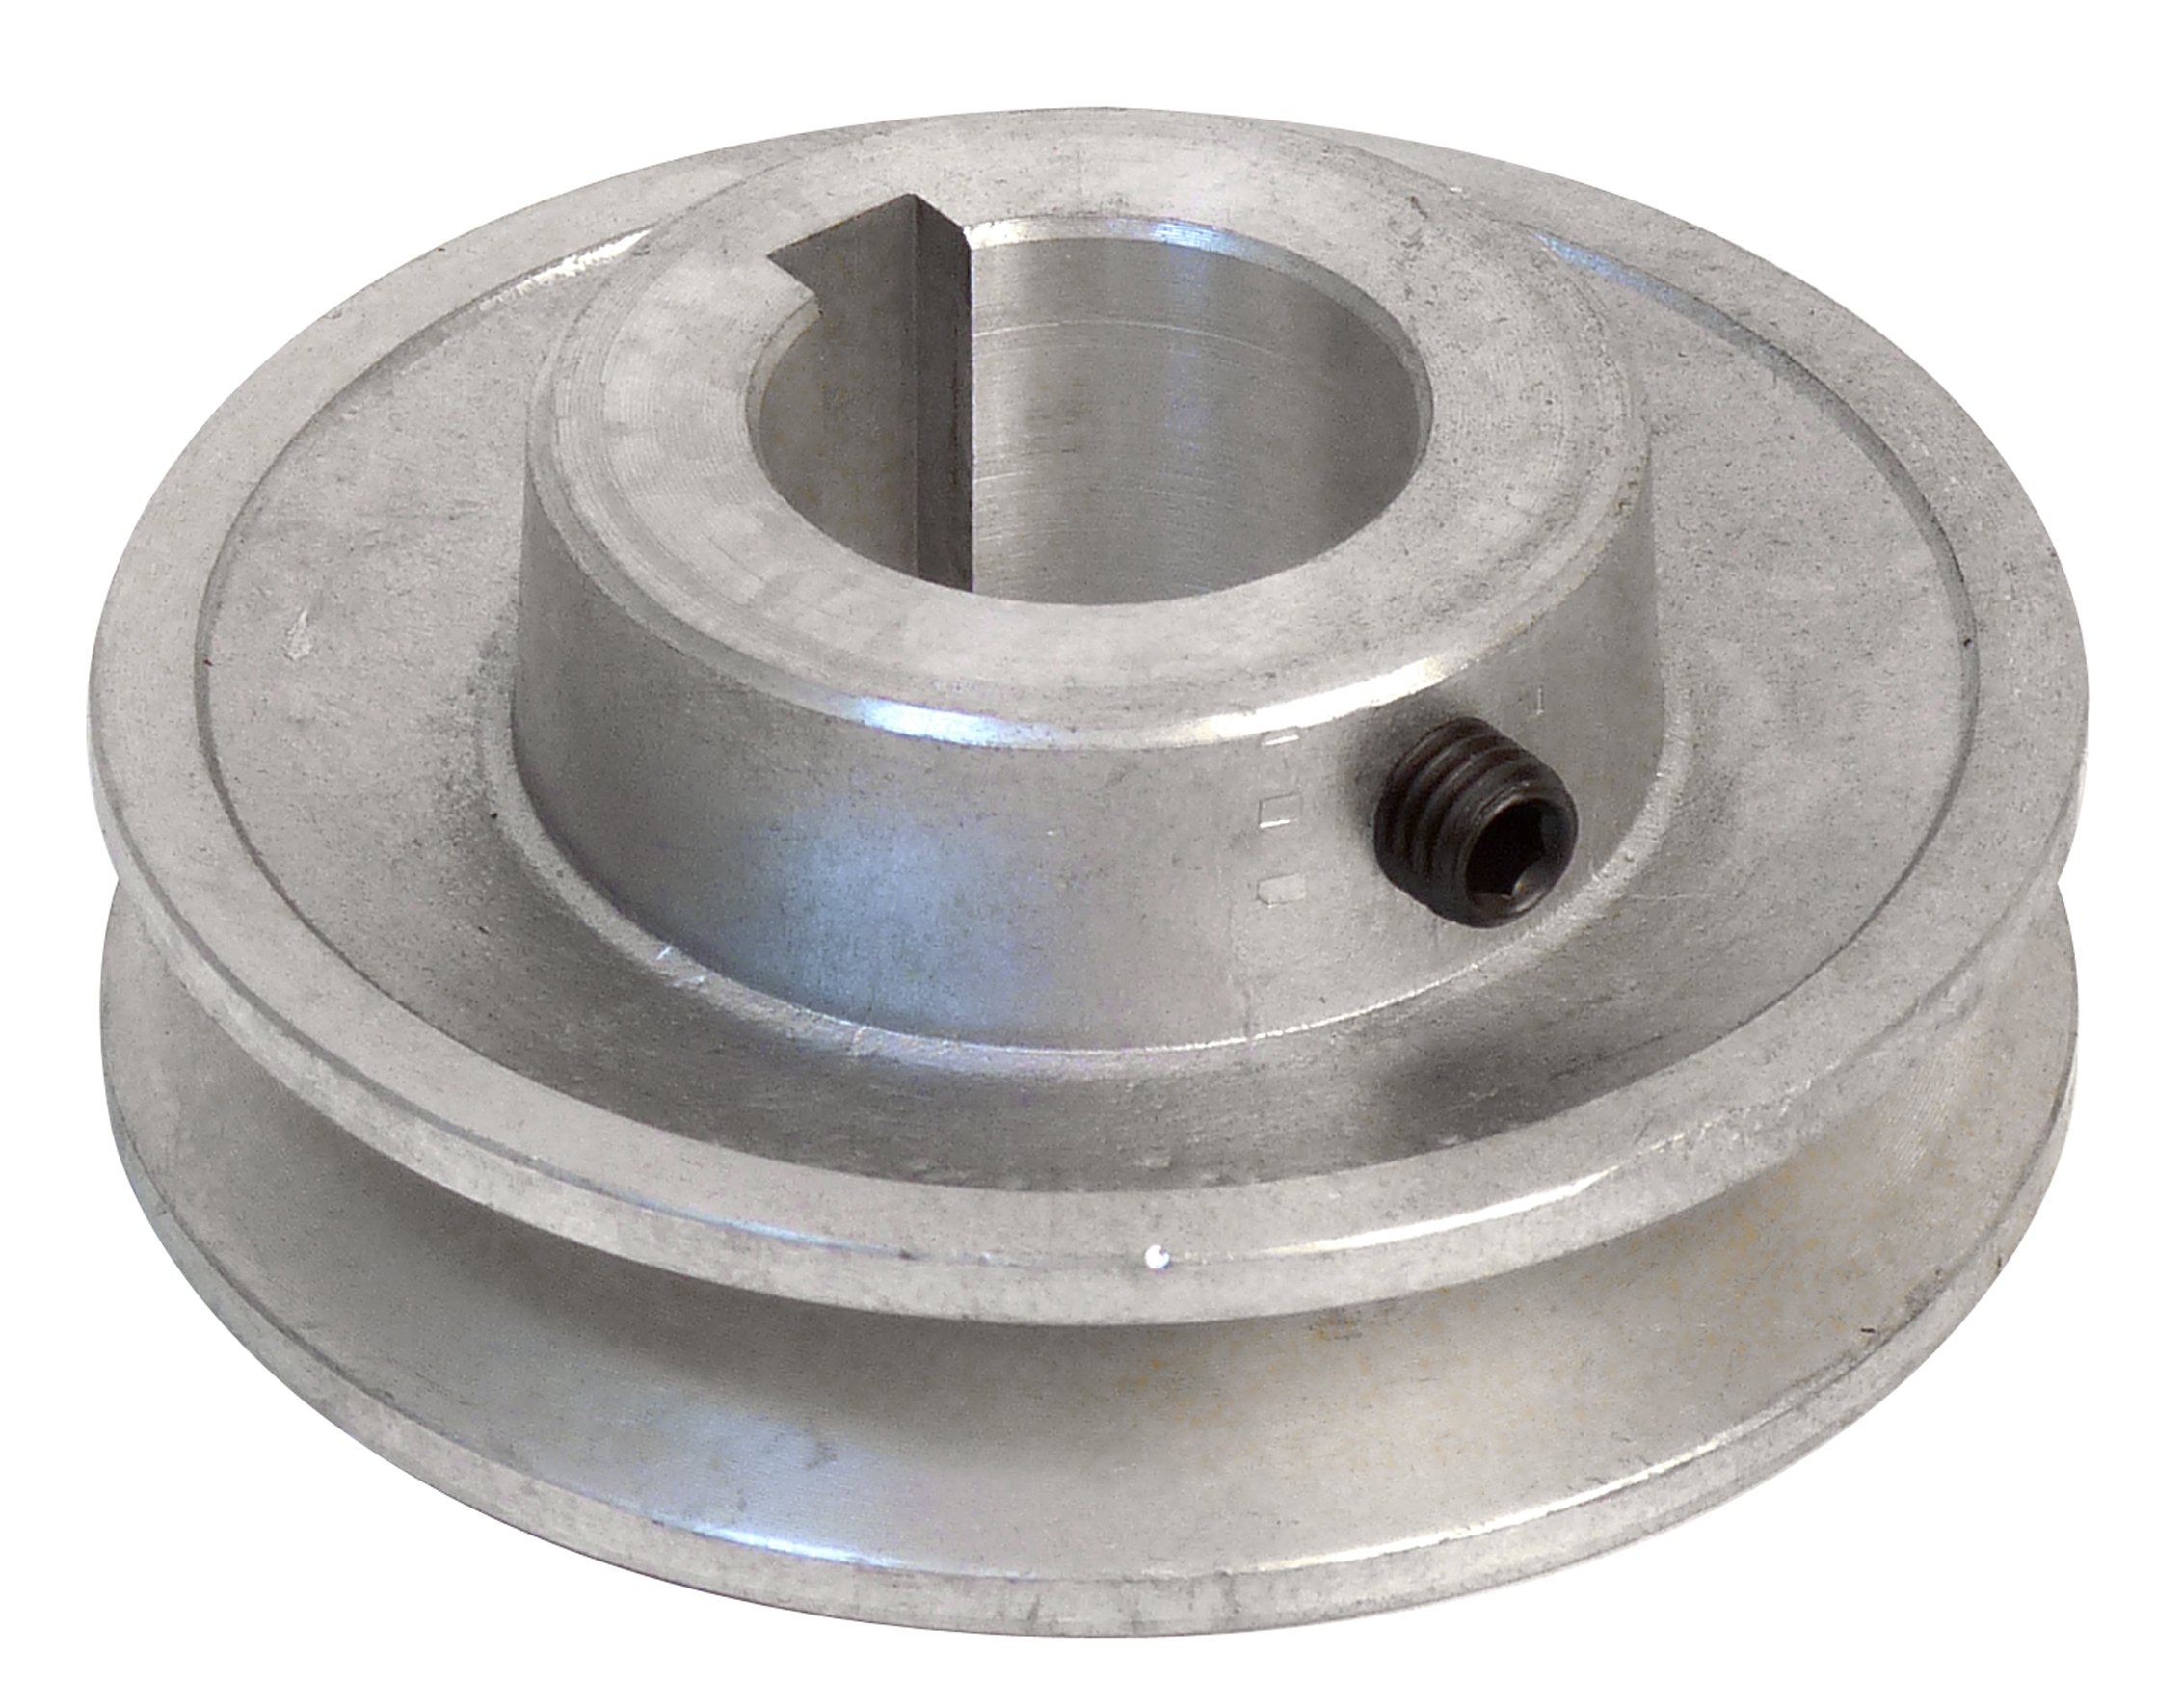 Fartools 117265 Riemenscheibe Aluminium 80 mm Durchmesser/28 mm Bohrung